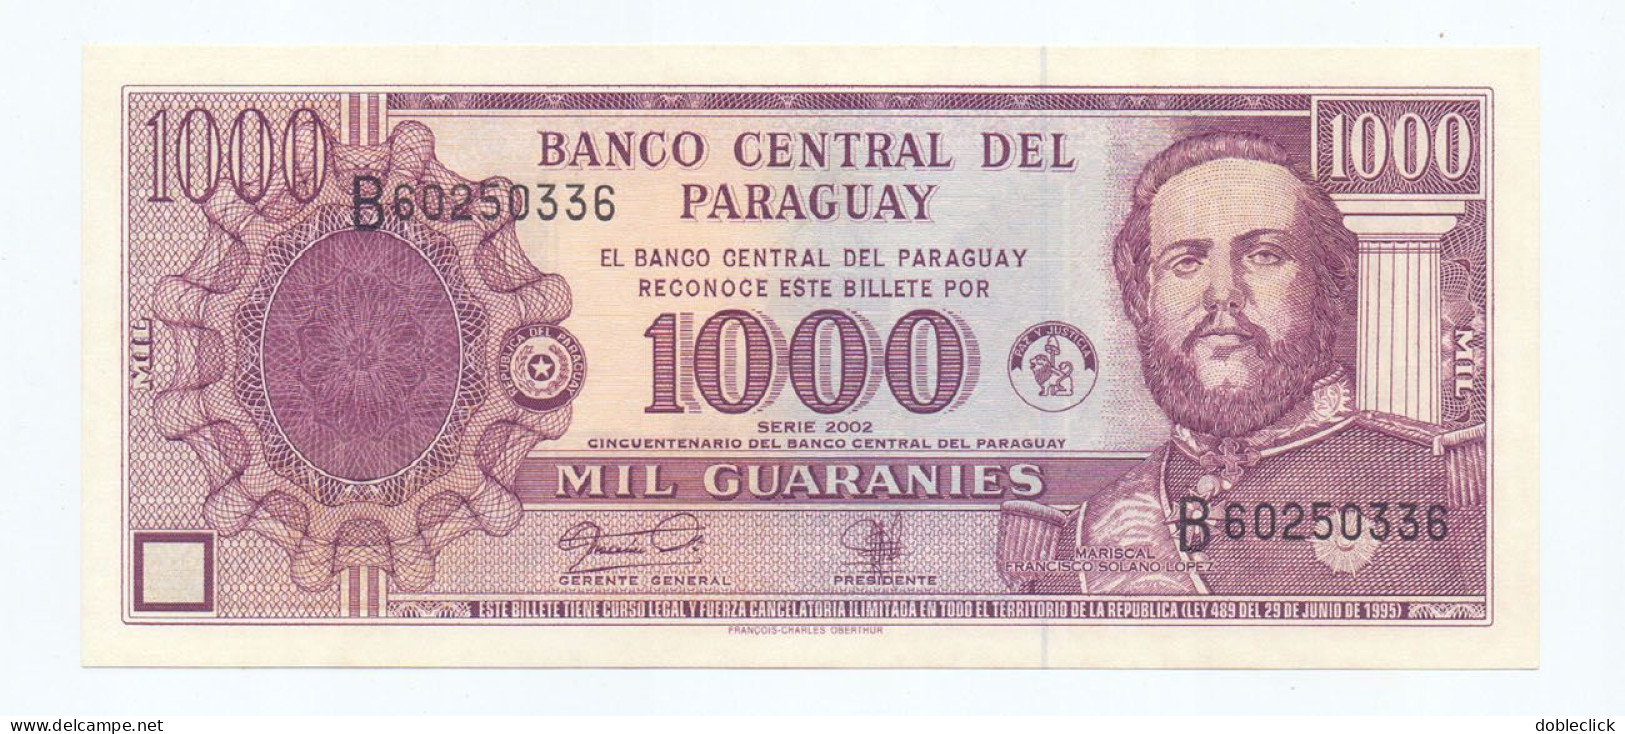 PARAGUAY - 1000 GUARANIES COMMEMORATIVE P-221 - 2002 UNC - Paraguay